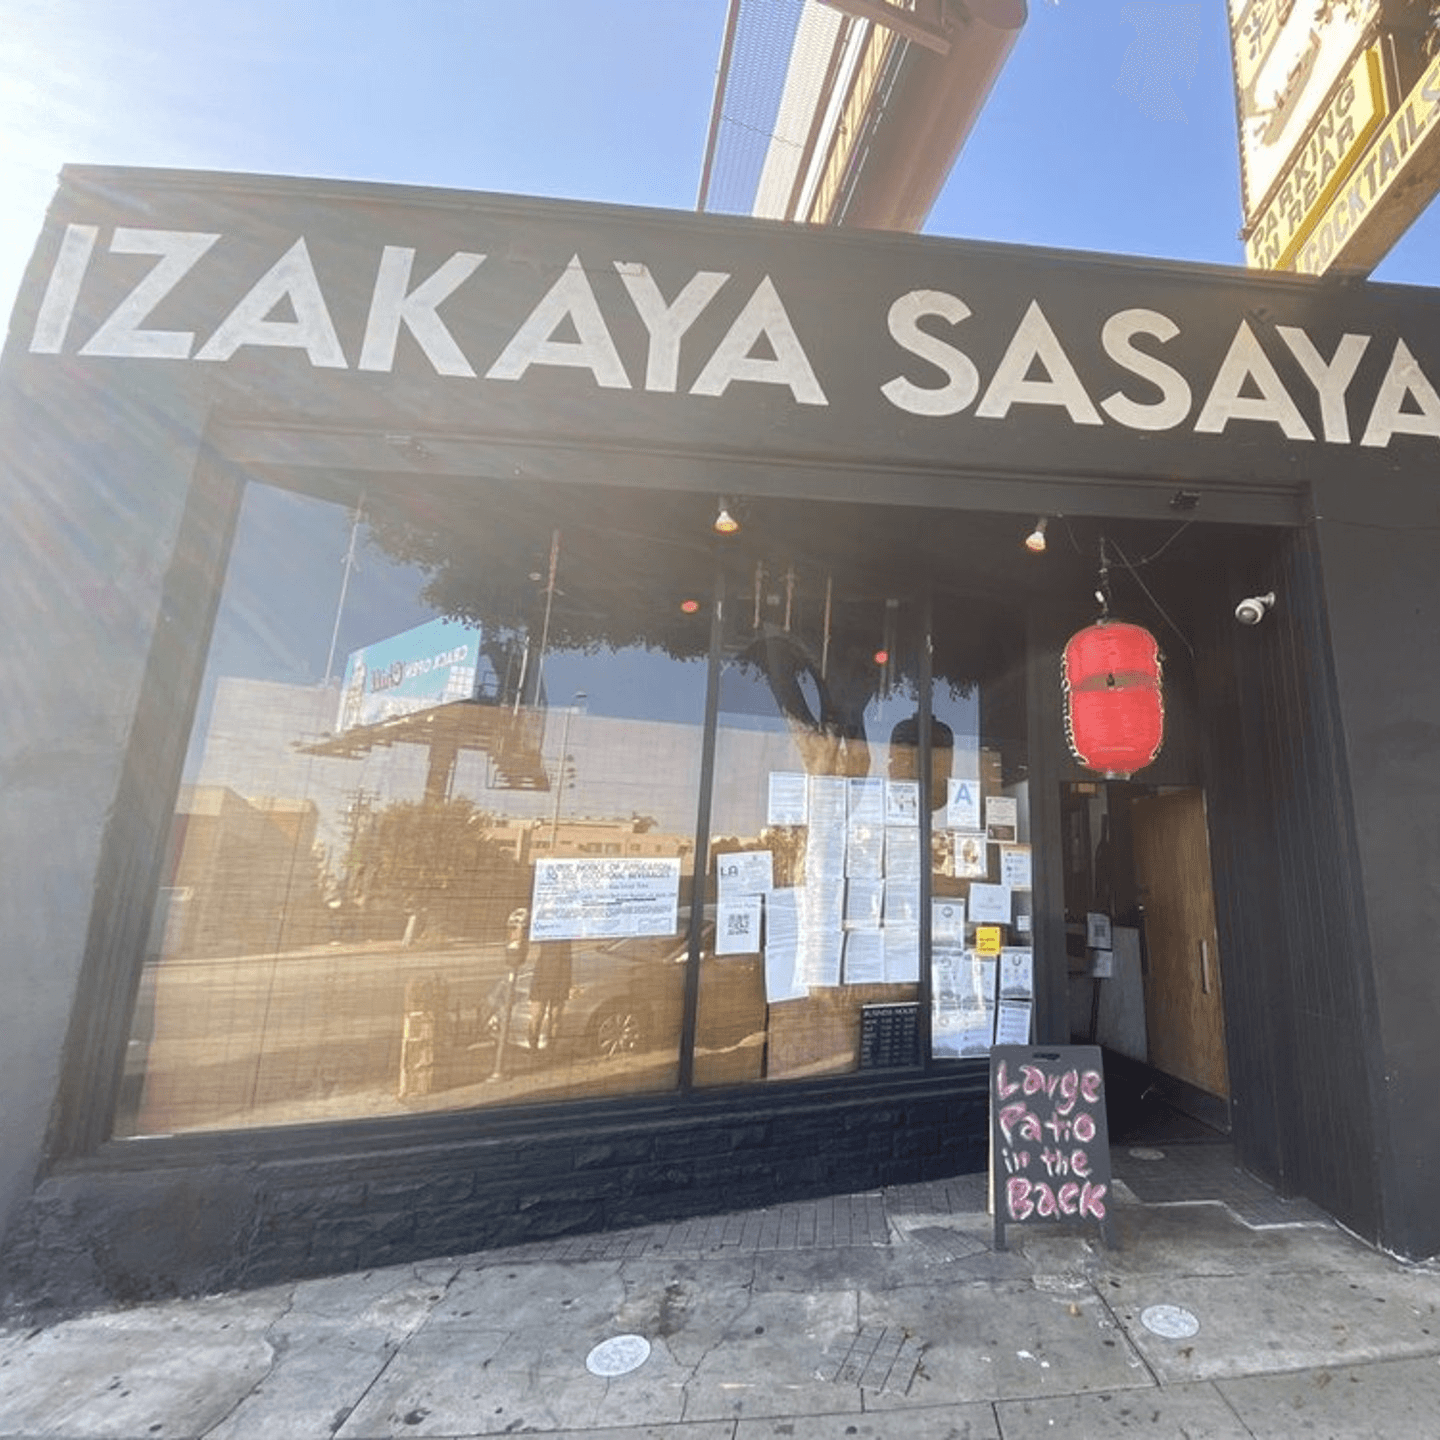 Izakaya Sasaya: Where LA Meets Japan!